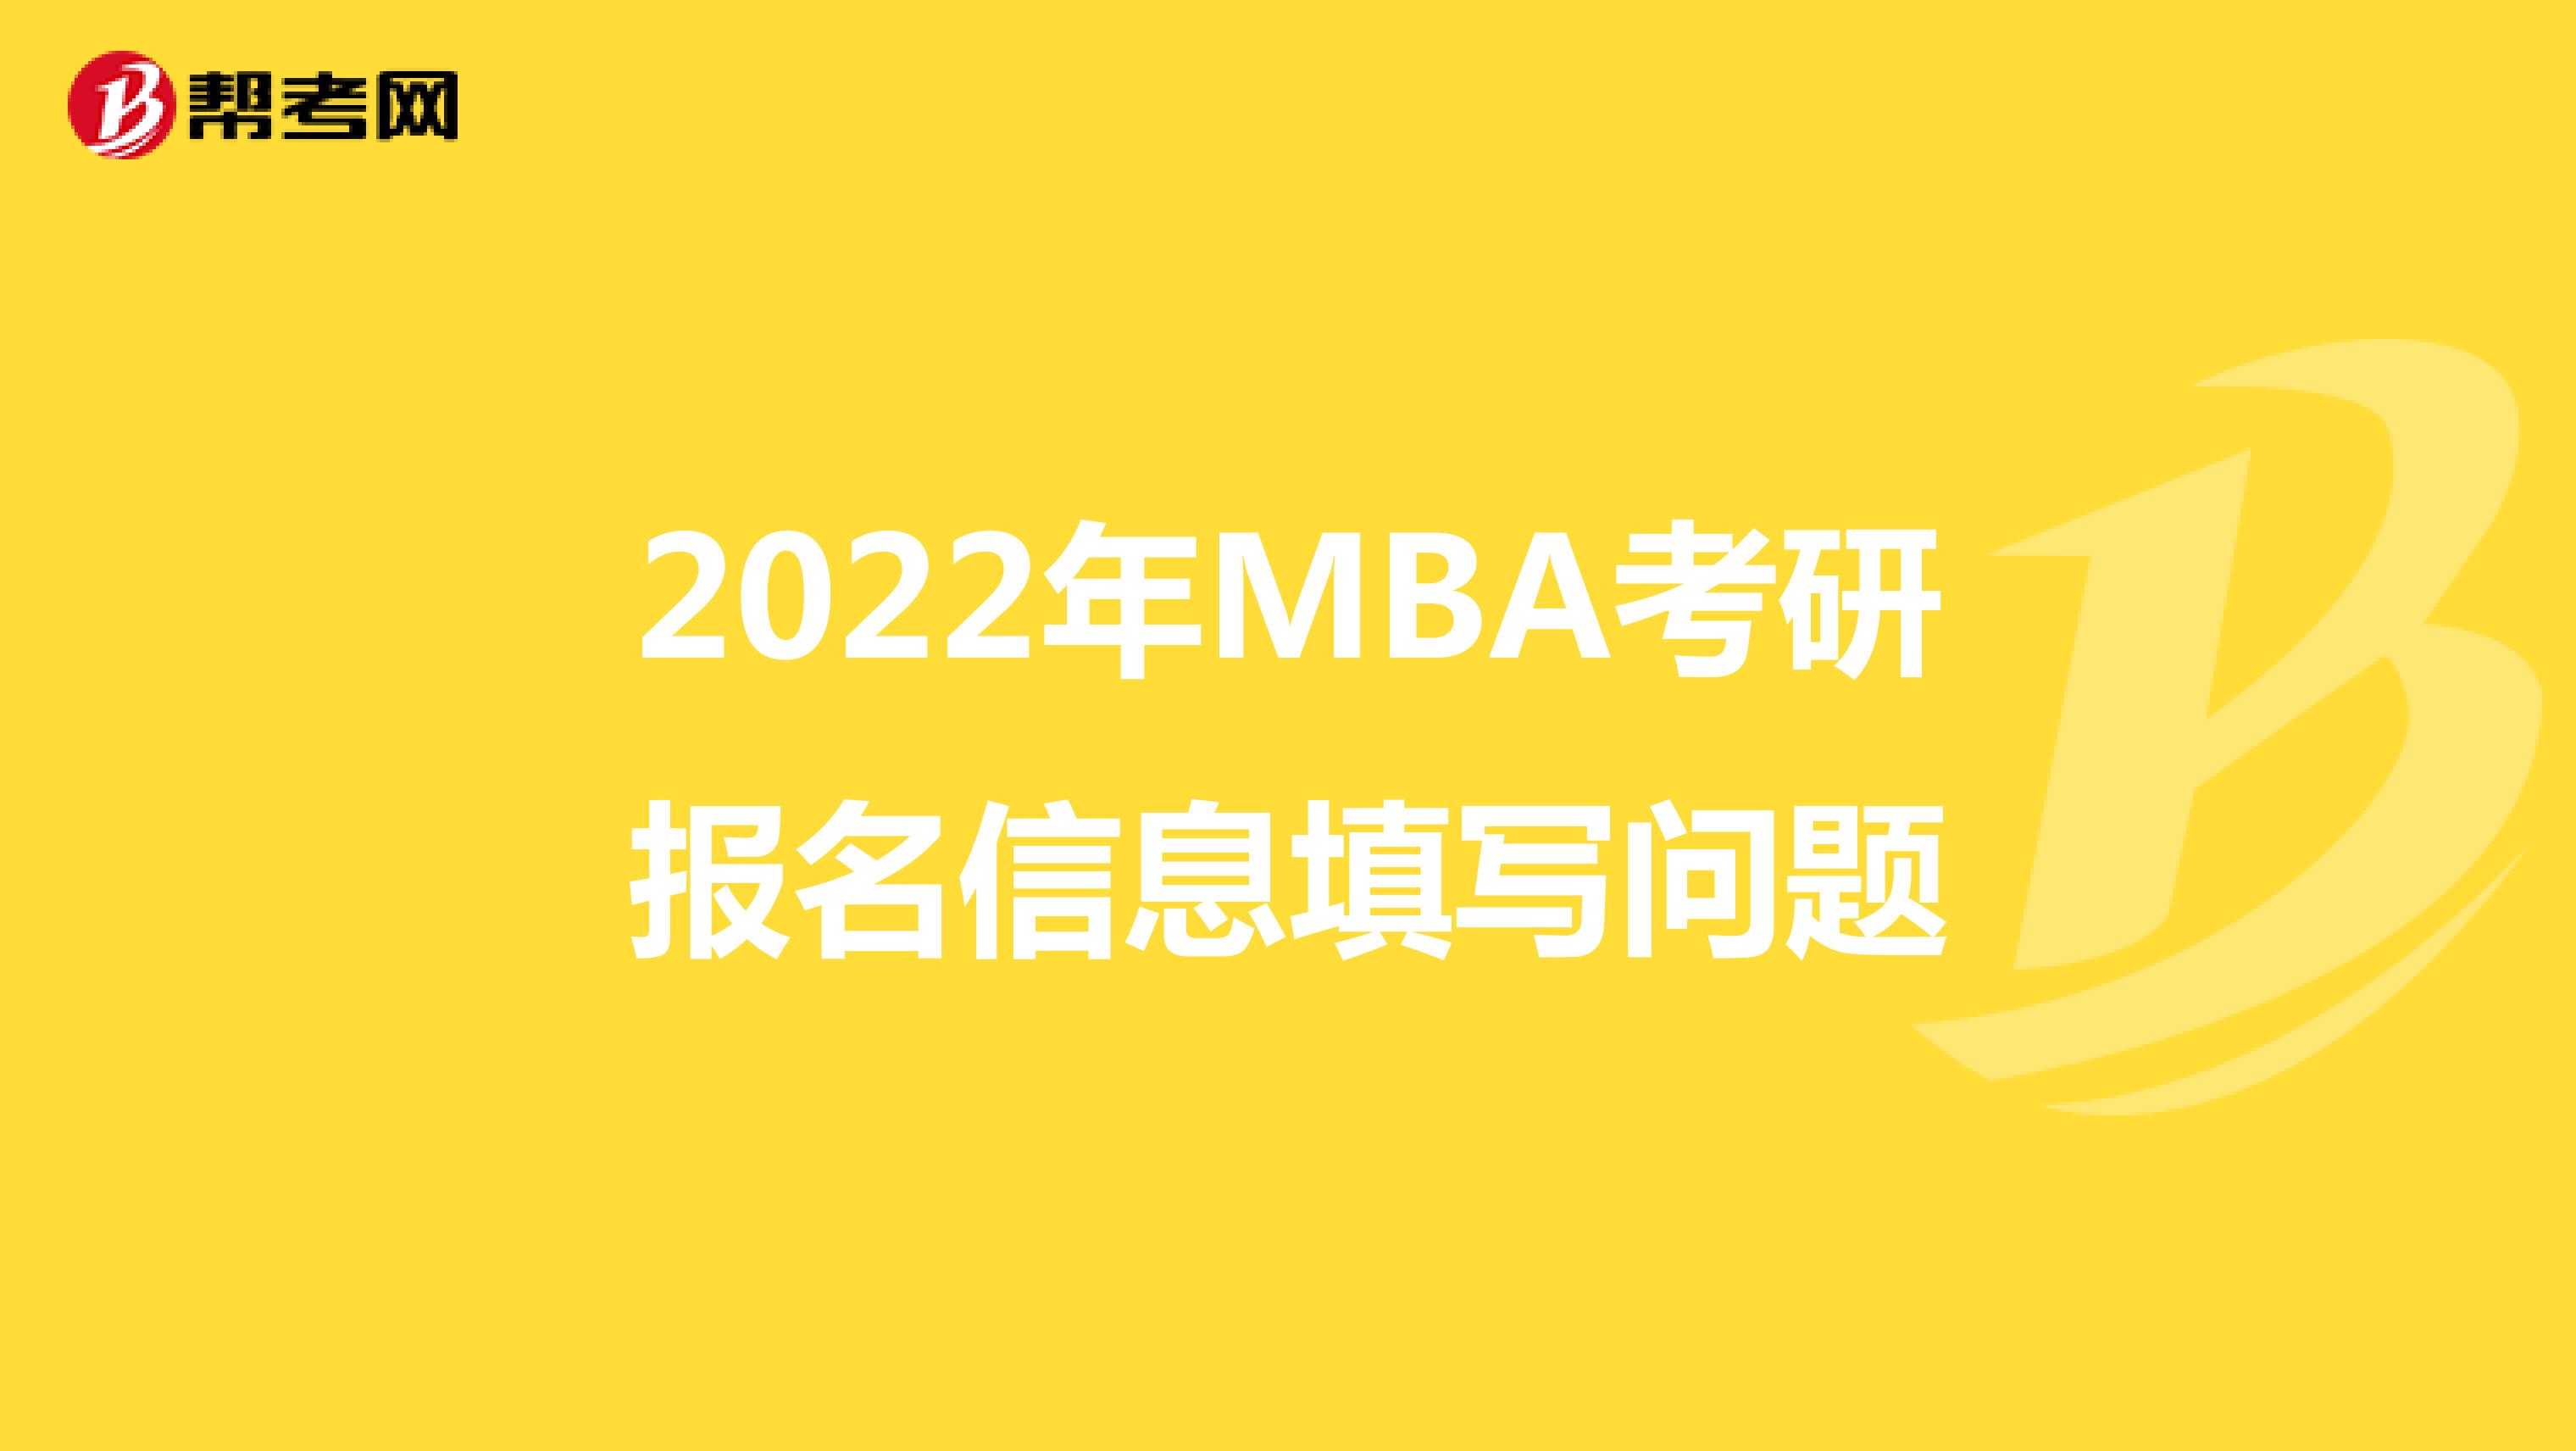 2022年MBA考研報名信息填寫問題